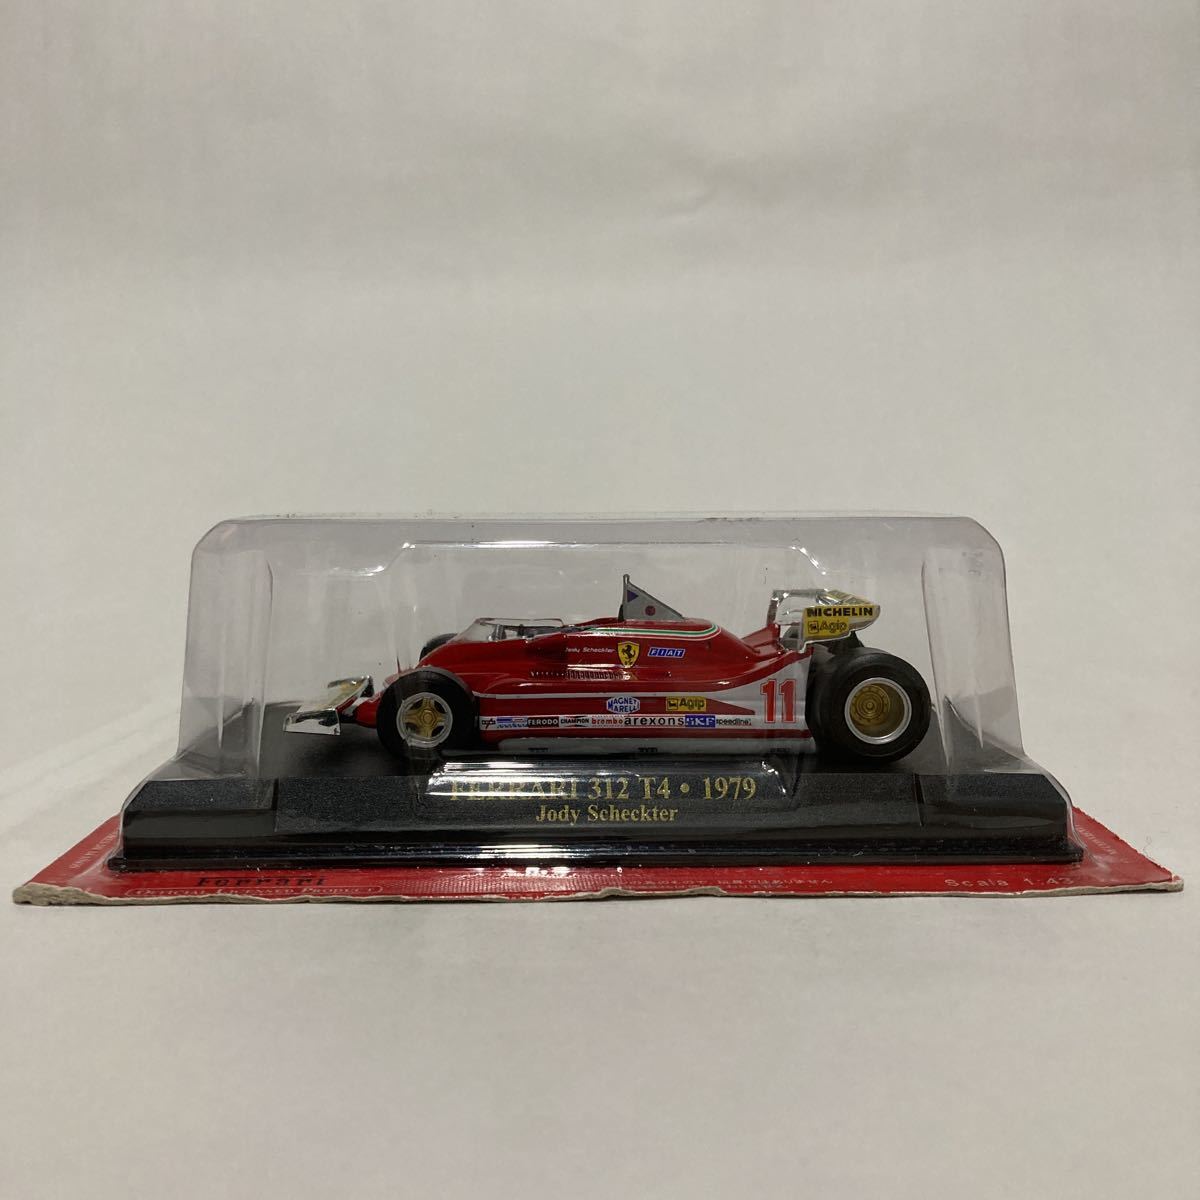 アシェット 公式フェラーリF1コレクション 1/43 Ferrari 312 T4 1979年 Jody Scheckter #11 GP マシン ジョディーシェクター ミニカー_画像2